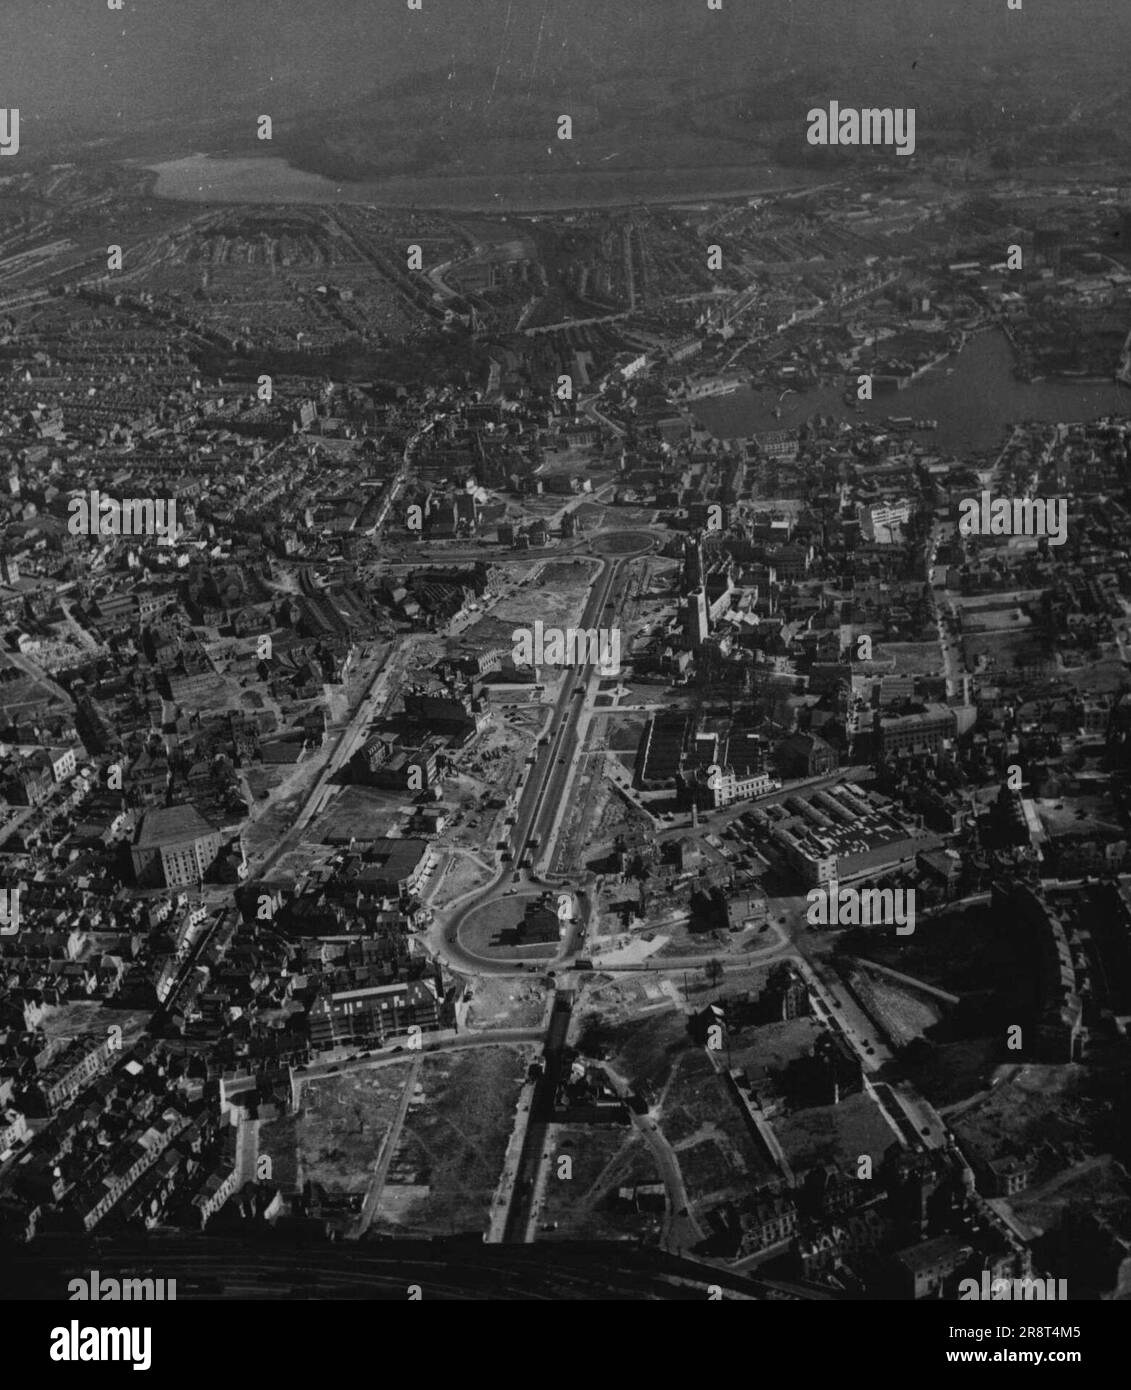 Wiederaufbau von Plymouth -- Luftaufnahme zeigt das Ausmaß der Schäden, die durch die Bombardierung des Zentrums von Plymouth entstanden sind. Über 72.000 Häuser wurden zerstört oder beschädigt. 16. Januar 1950. (Foto von Camera Press). Stockfoto